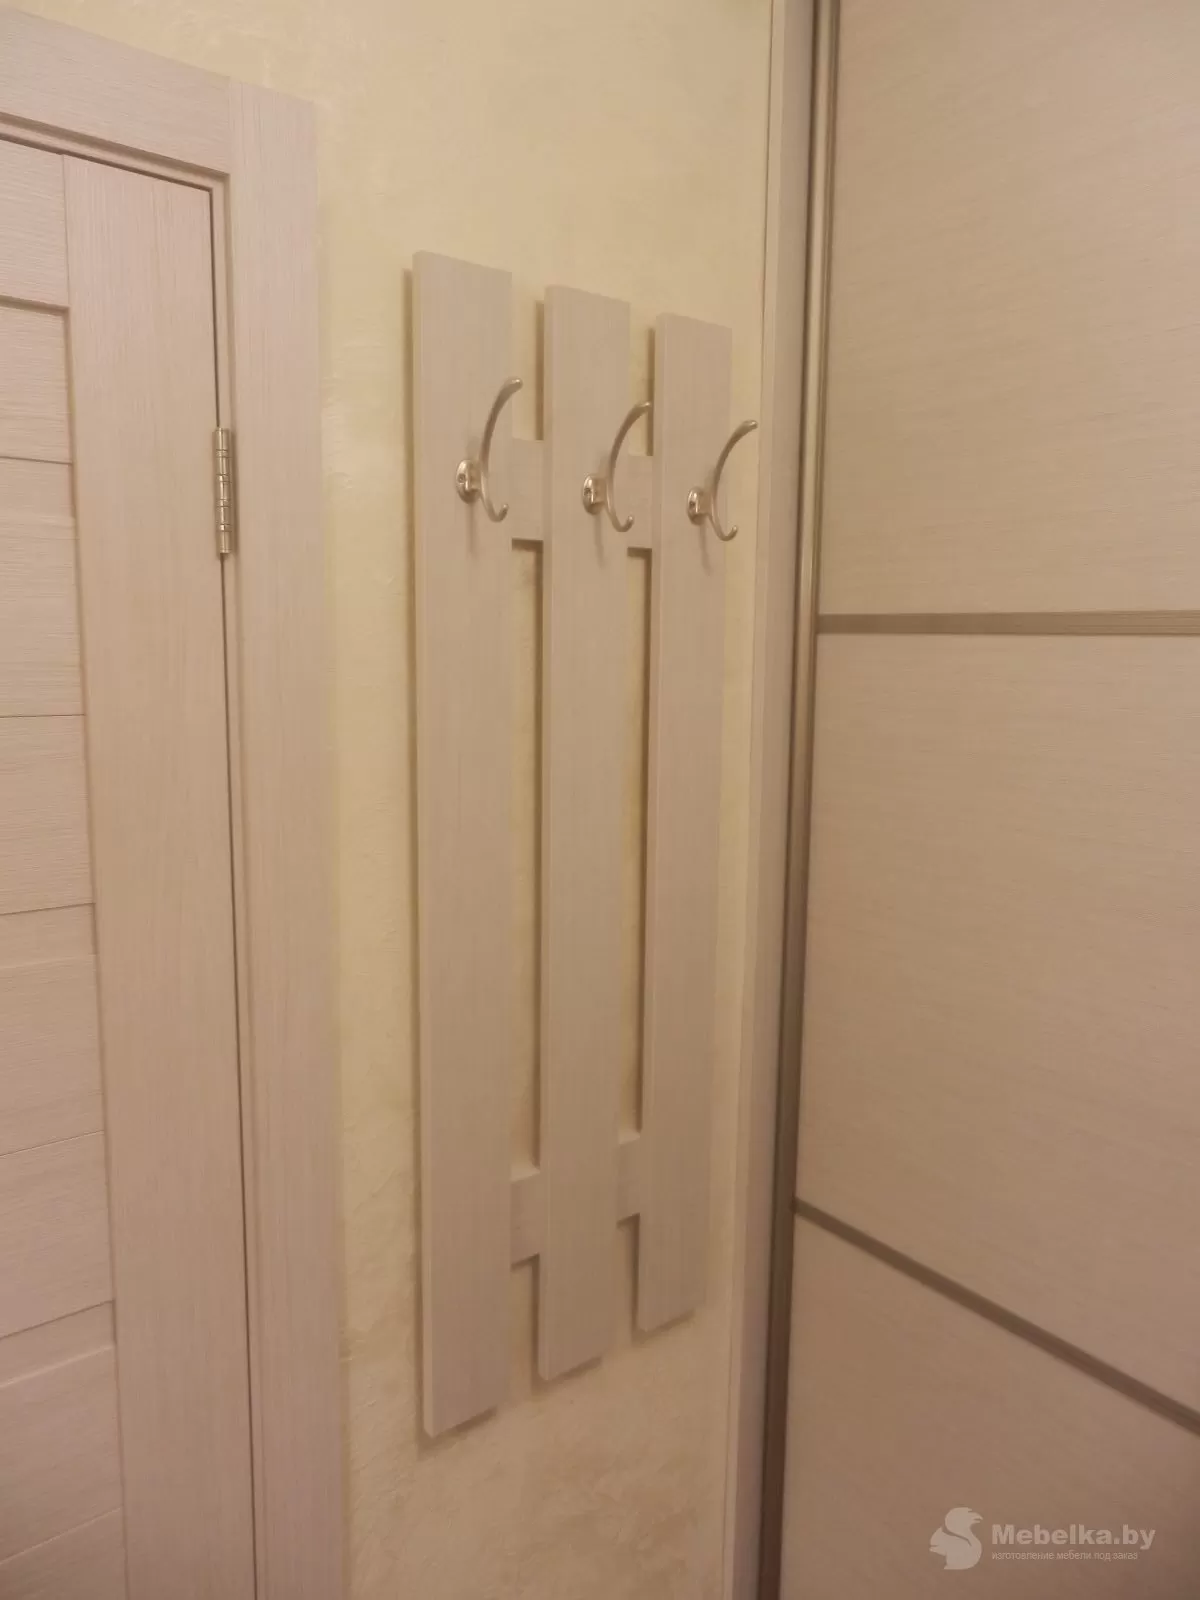 Панель с крючками для верхней одежды возле шкафа-купе